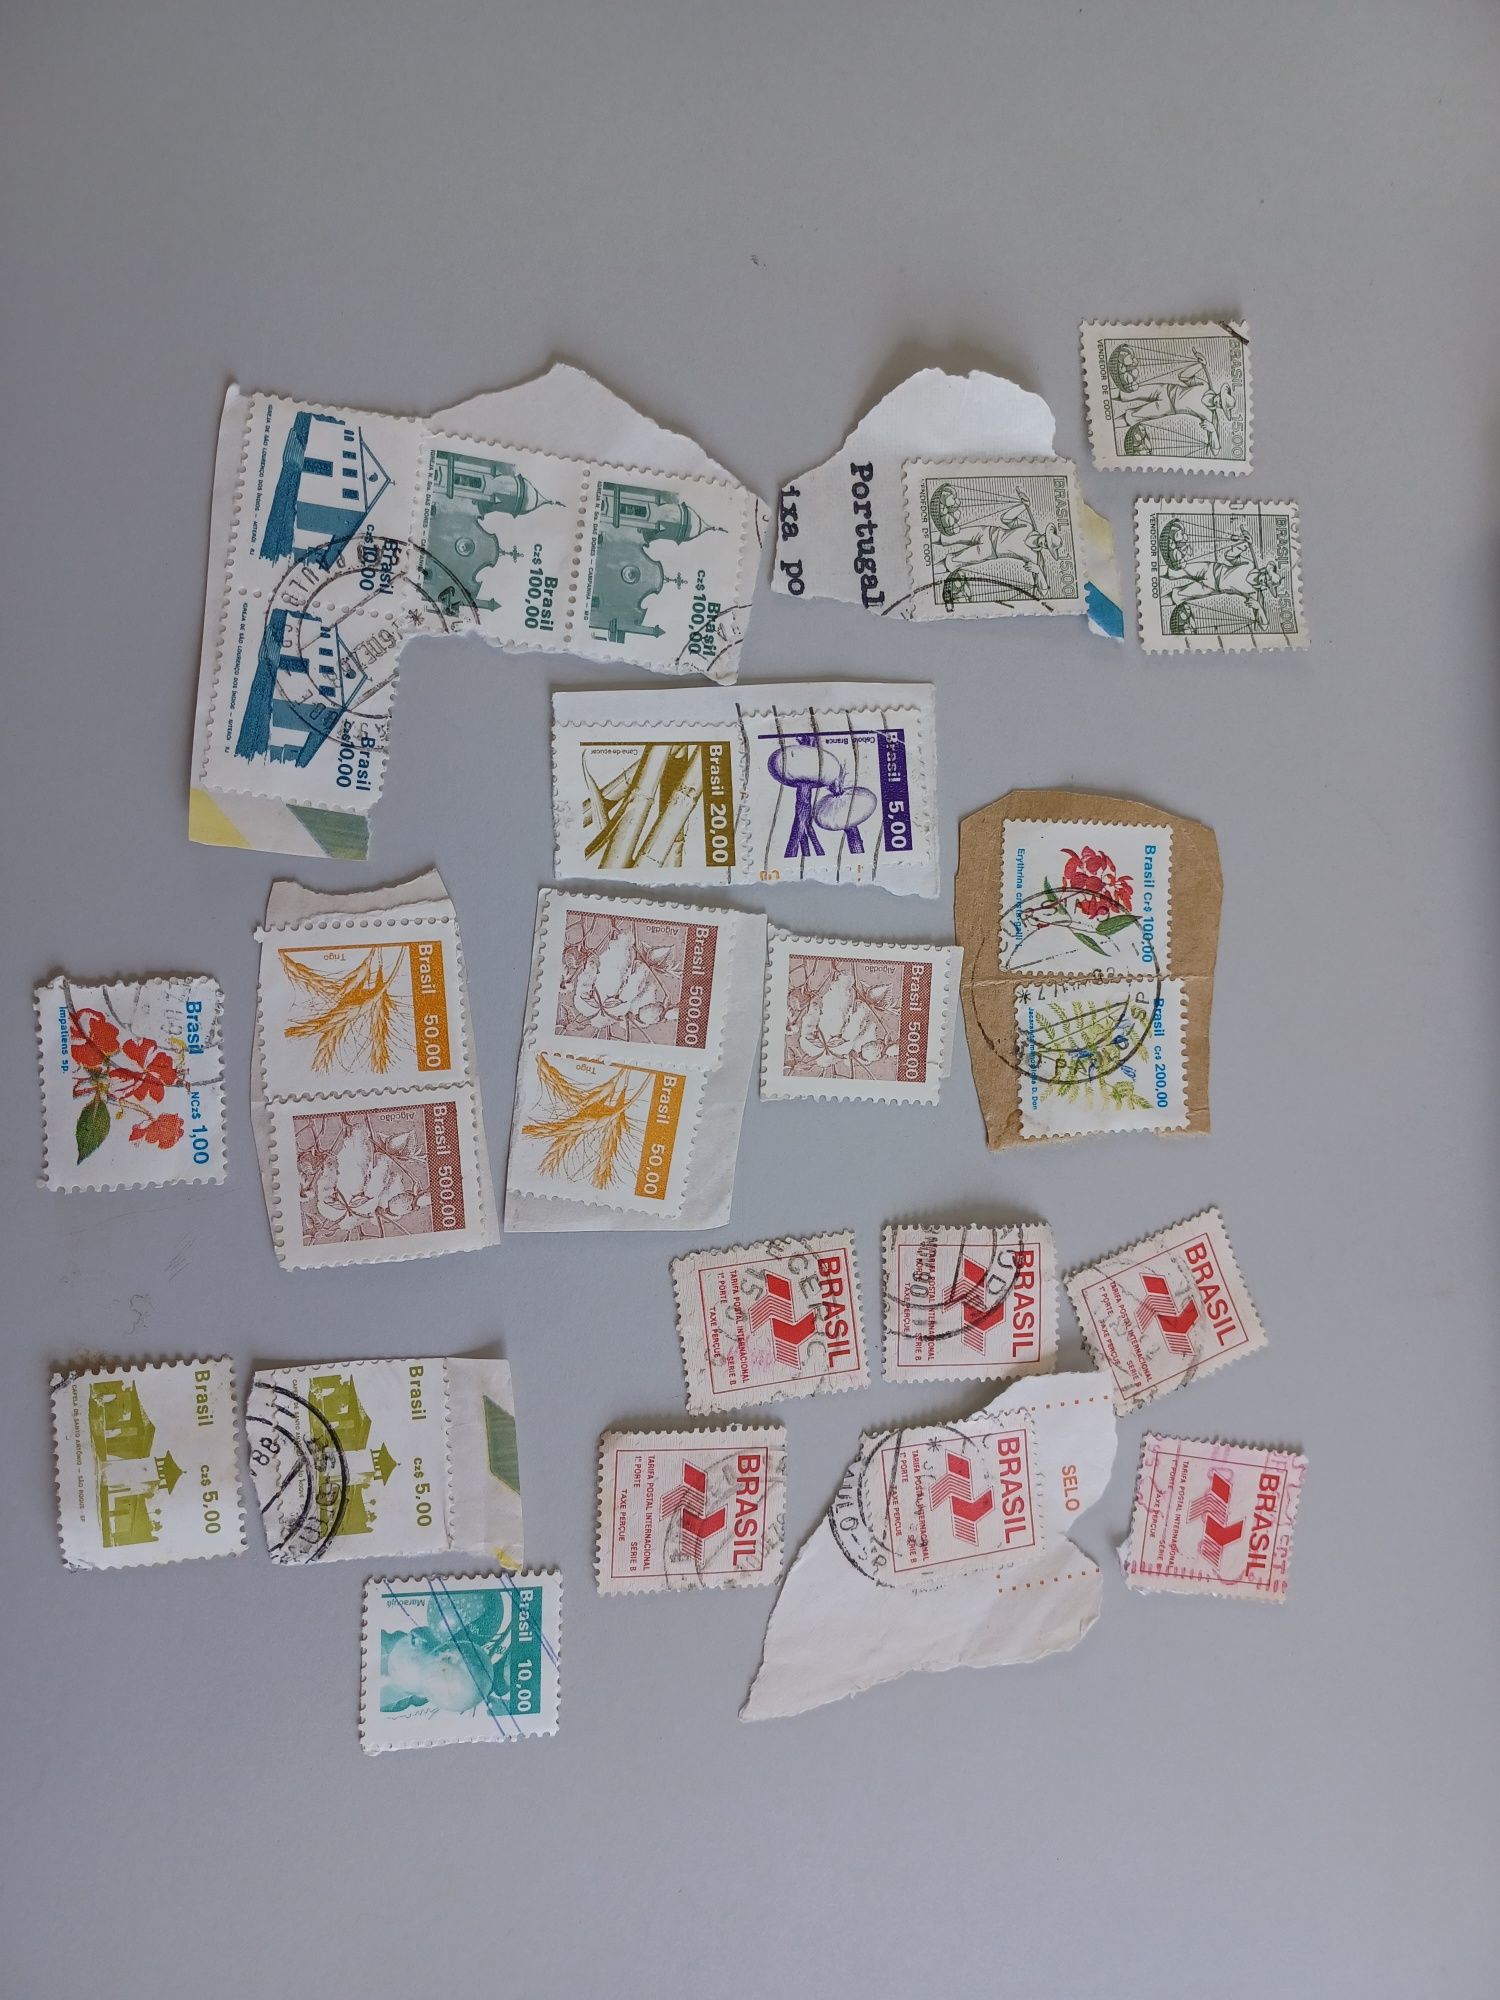 Lote de selos de varios paises